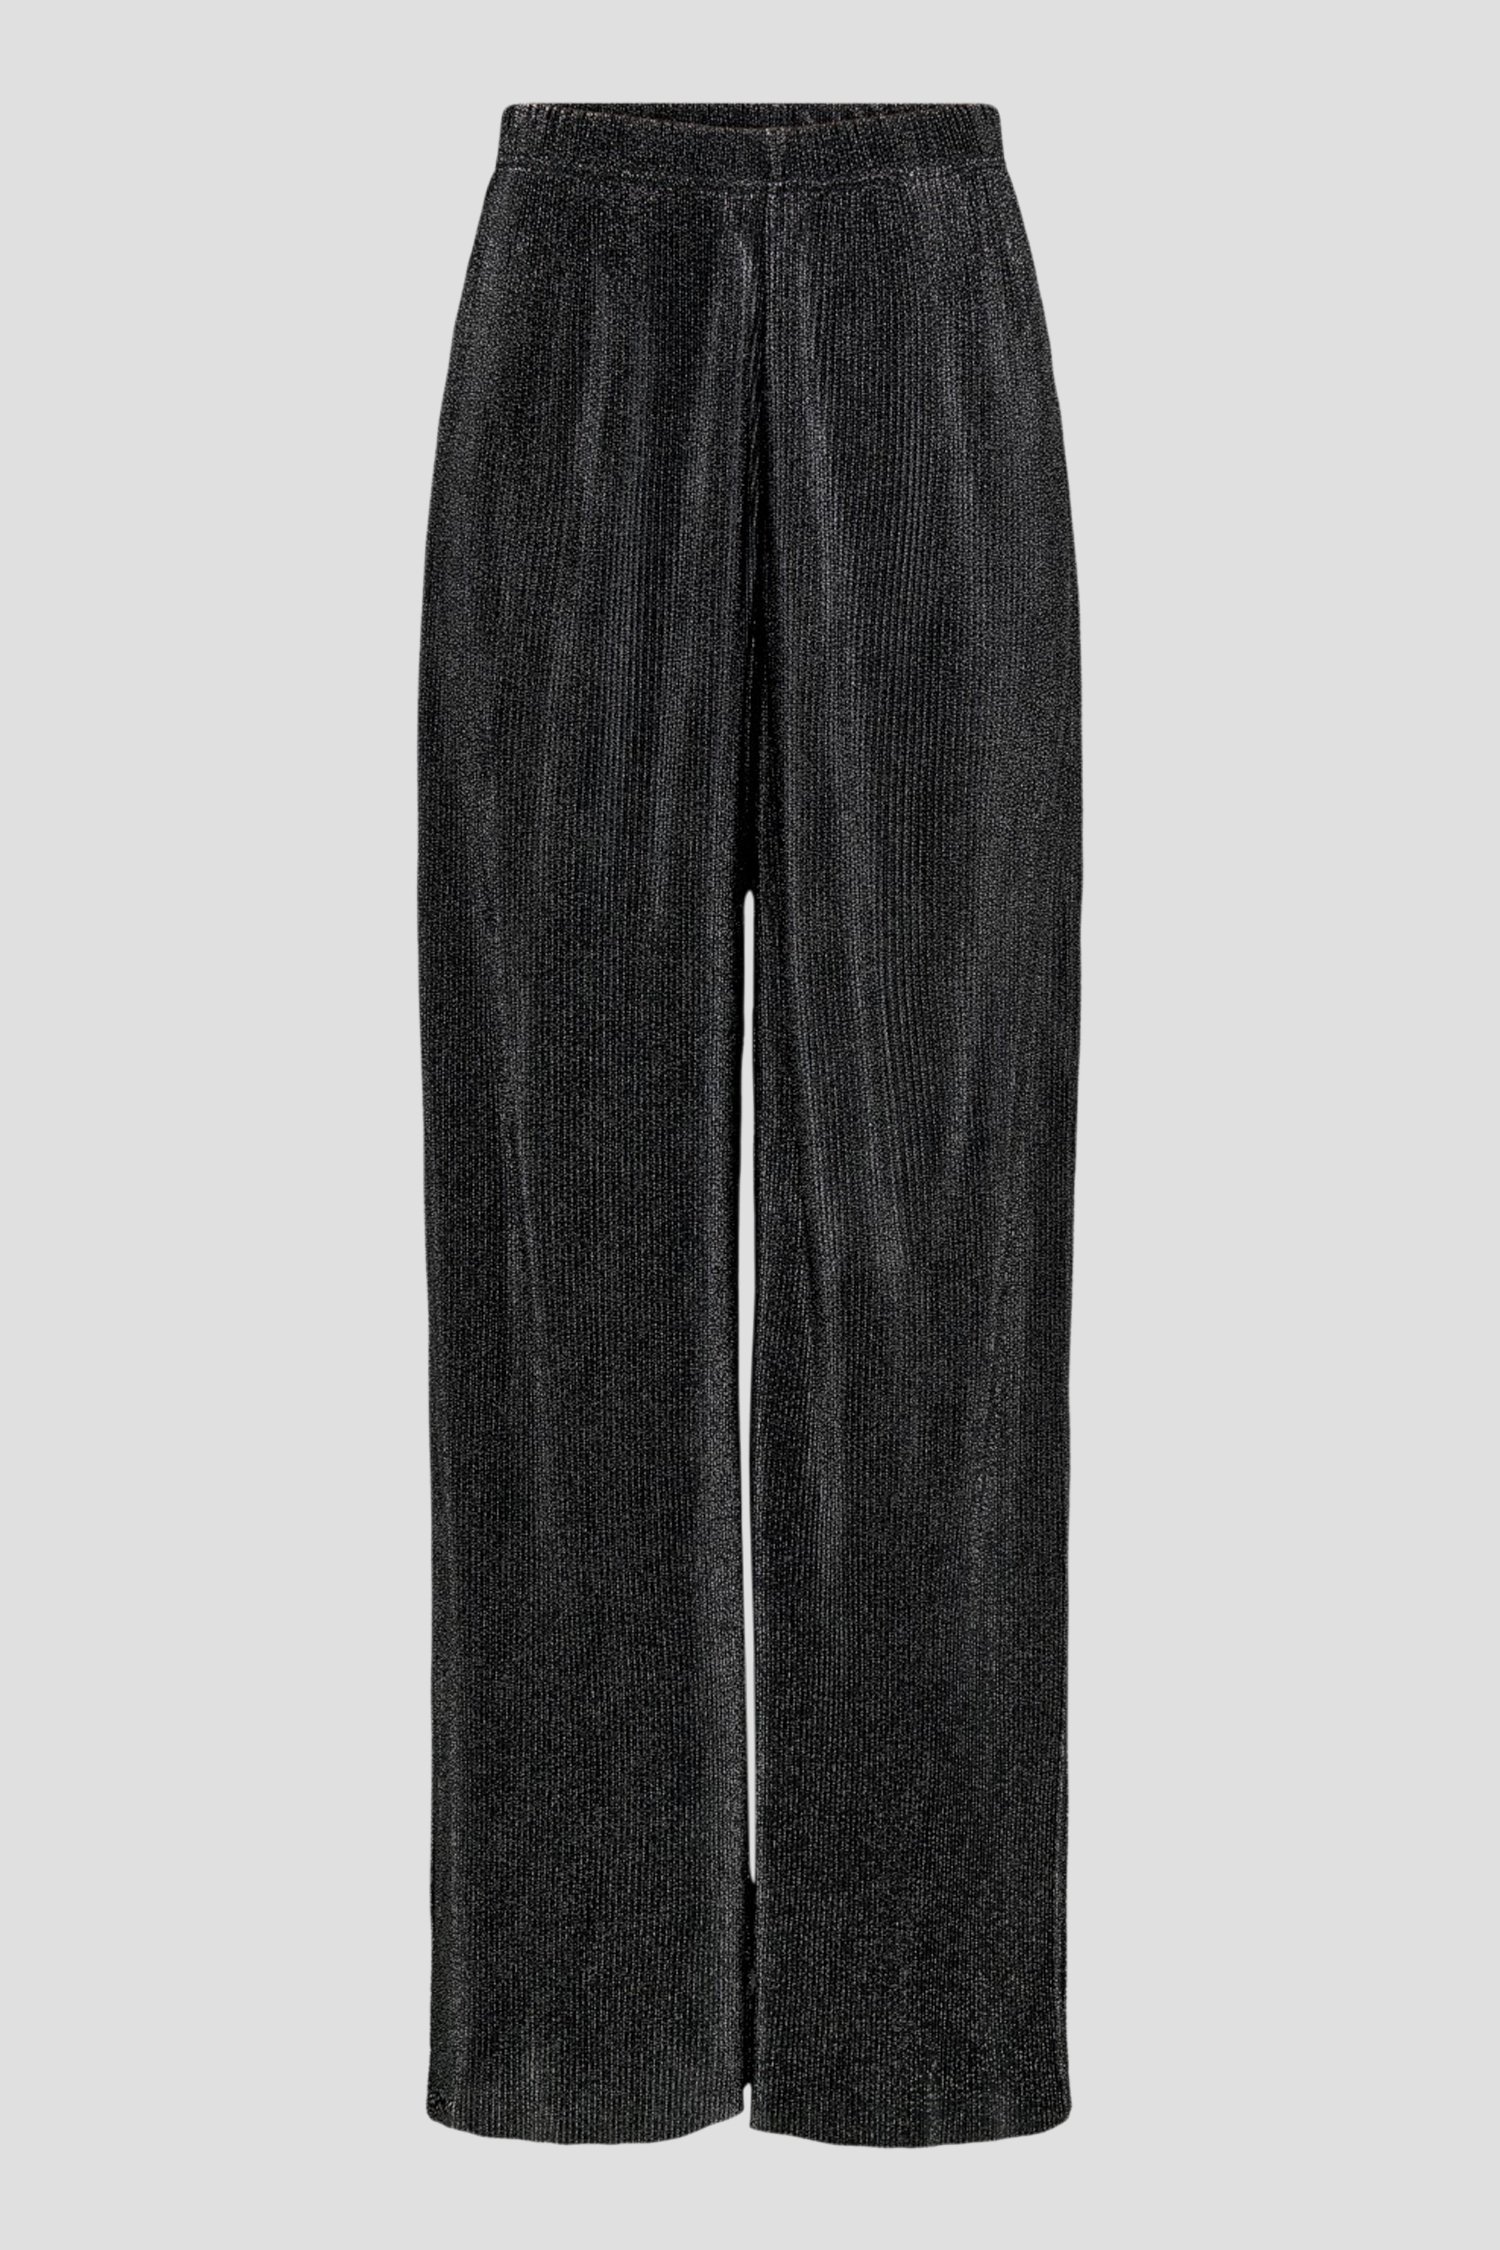 Pantalon large noir avec paillettes de JDY pour Femmes